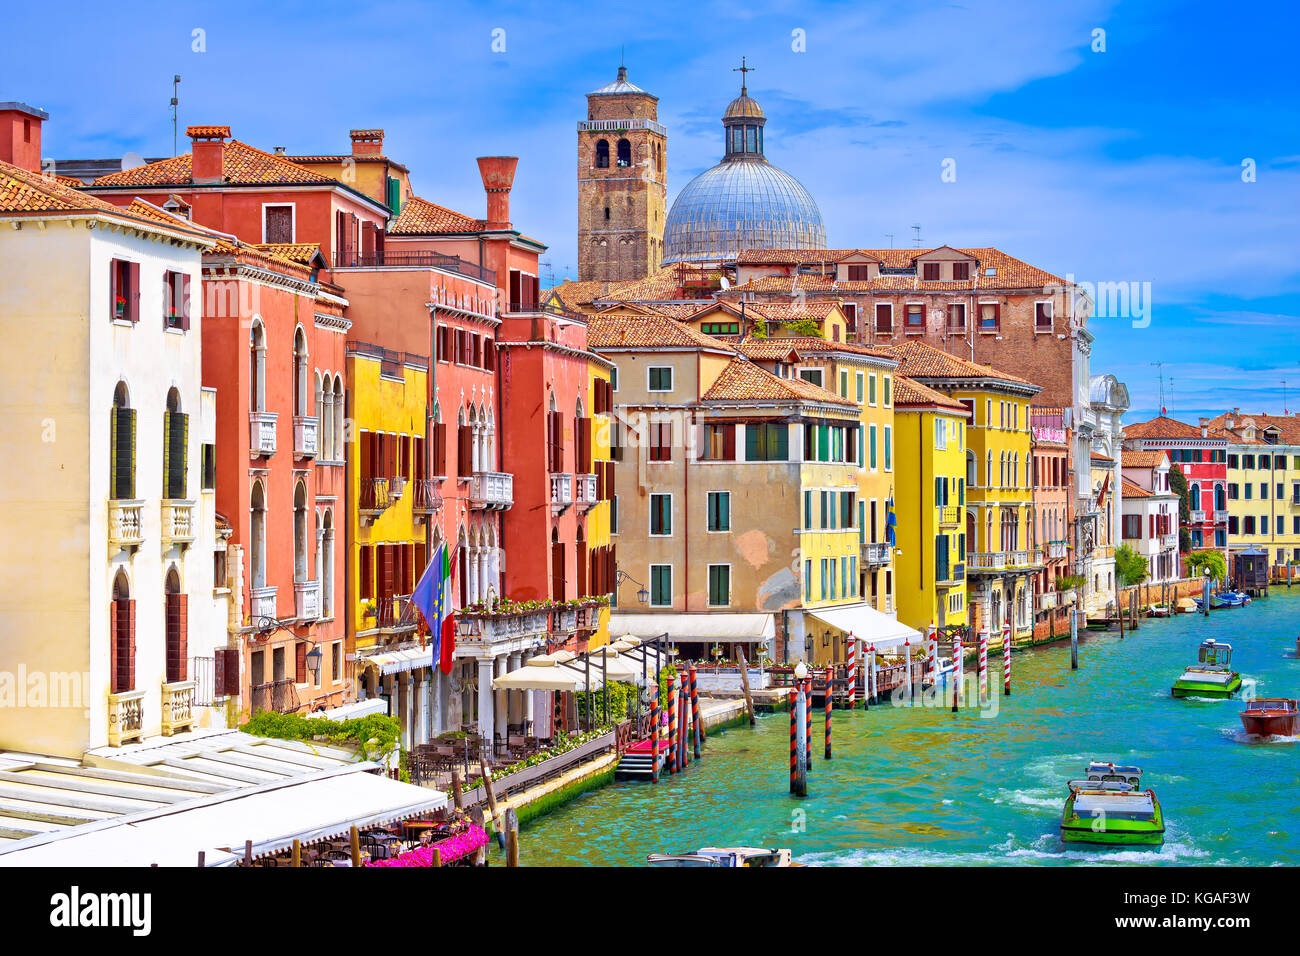 Colorful Canal Grande in Venice view, tourist destination in Veneto region of Italy Stock Photo